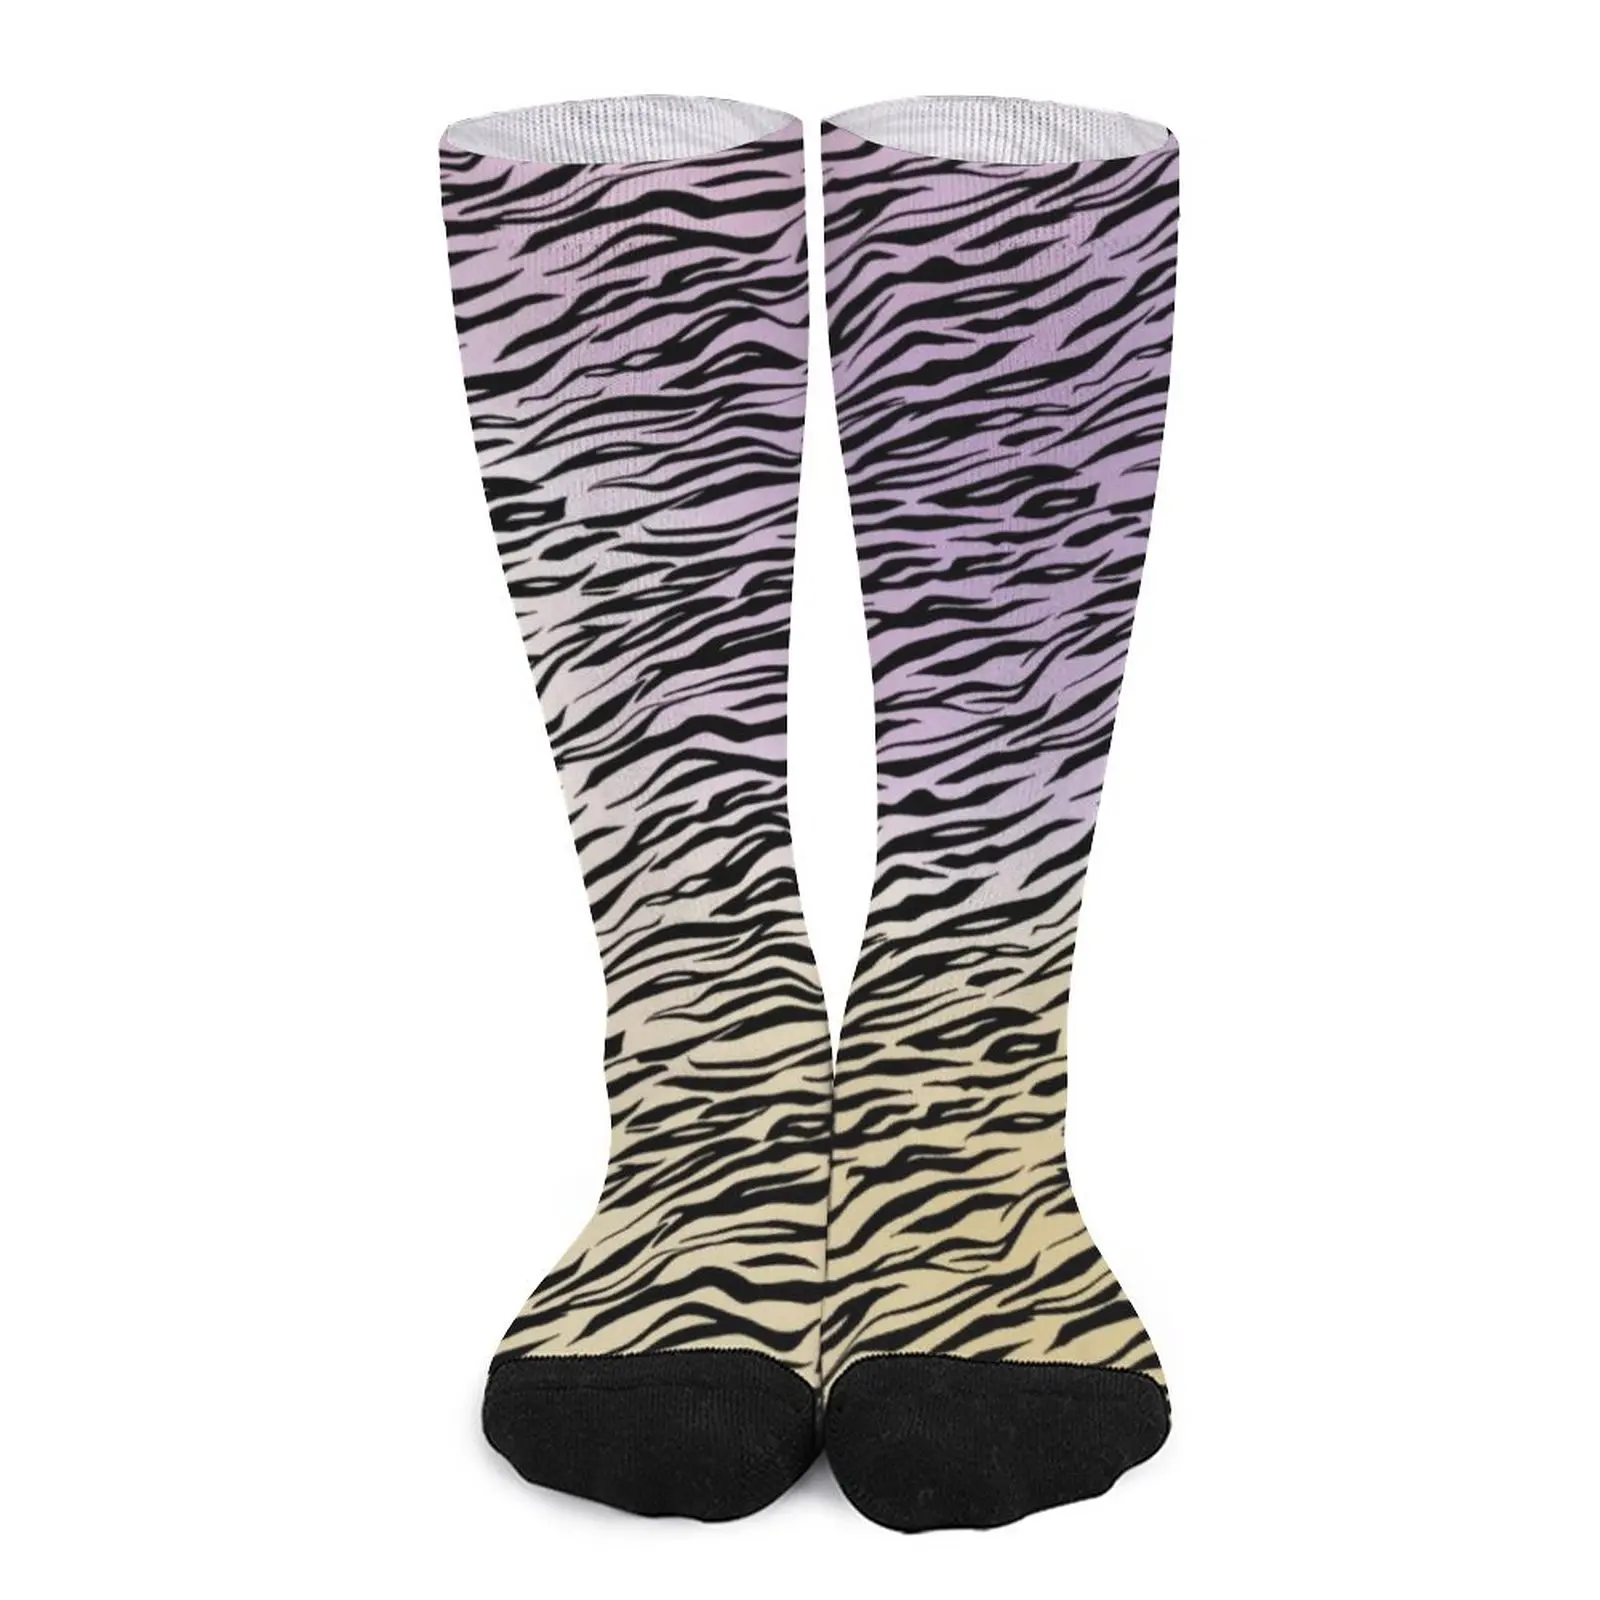 

Чулки с принтом зебры, носки с эффектом омбре для пар, мягкие дышащие готические носки, спортивные нескользящие носки с принтом для бега, подарок